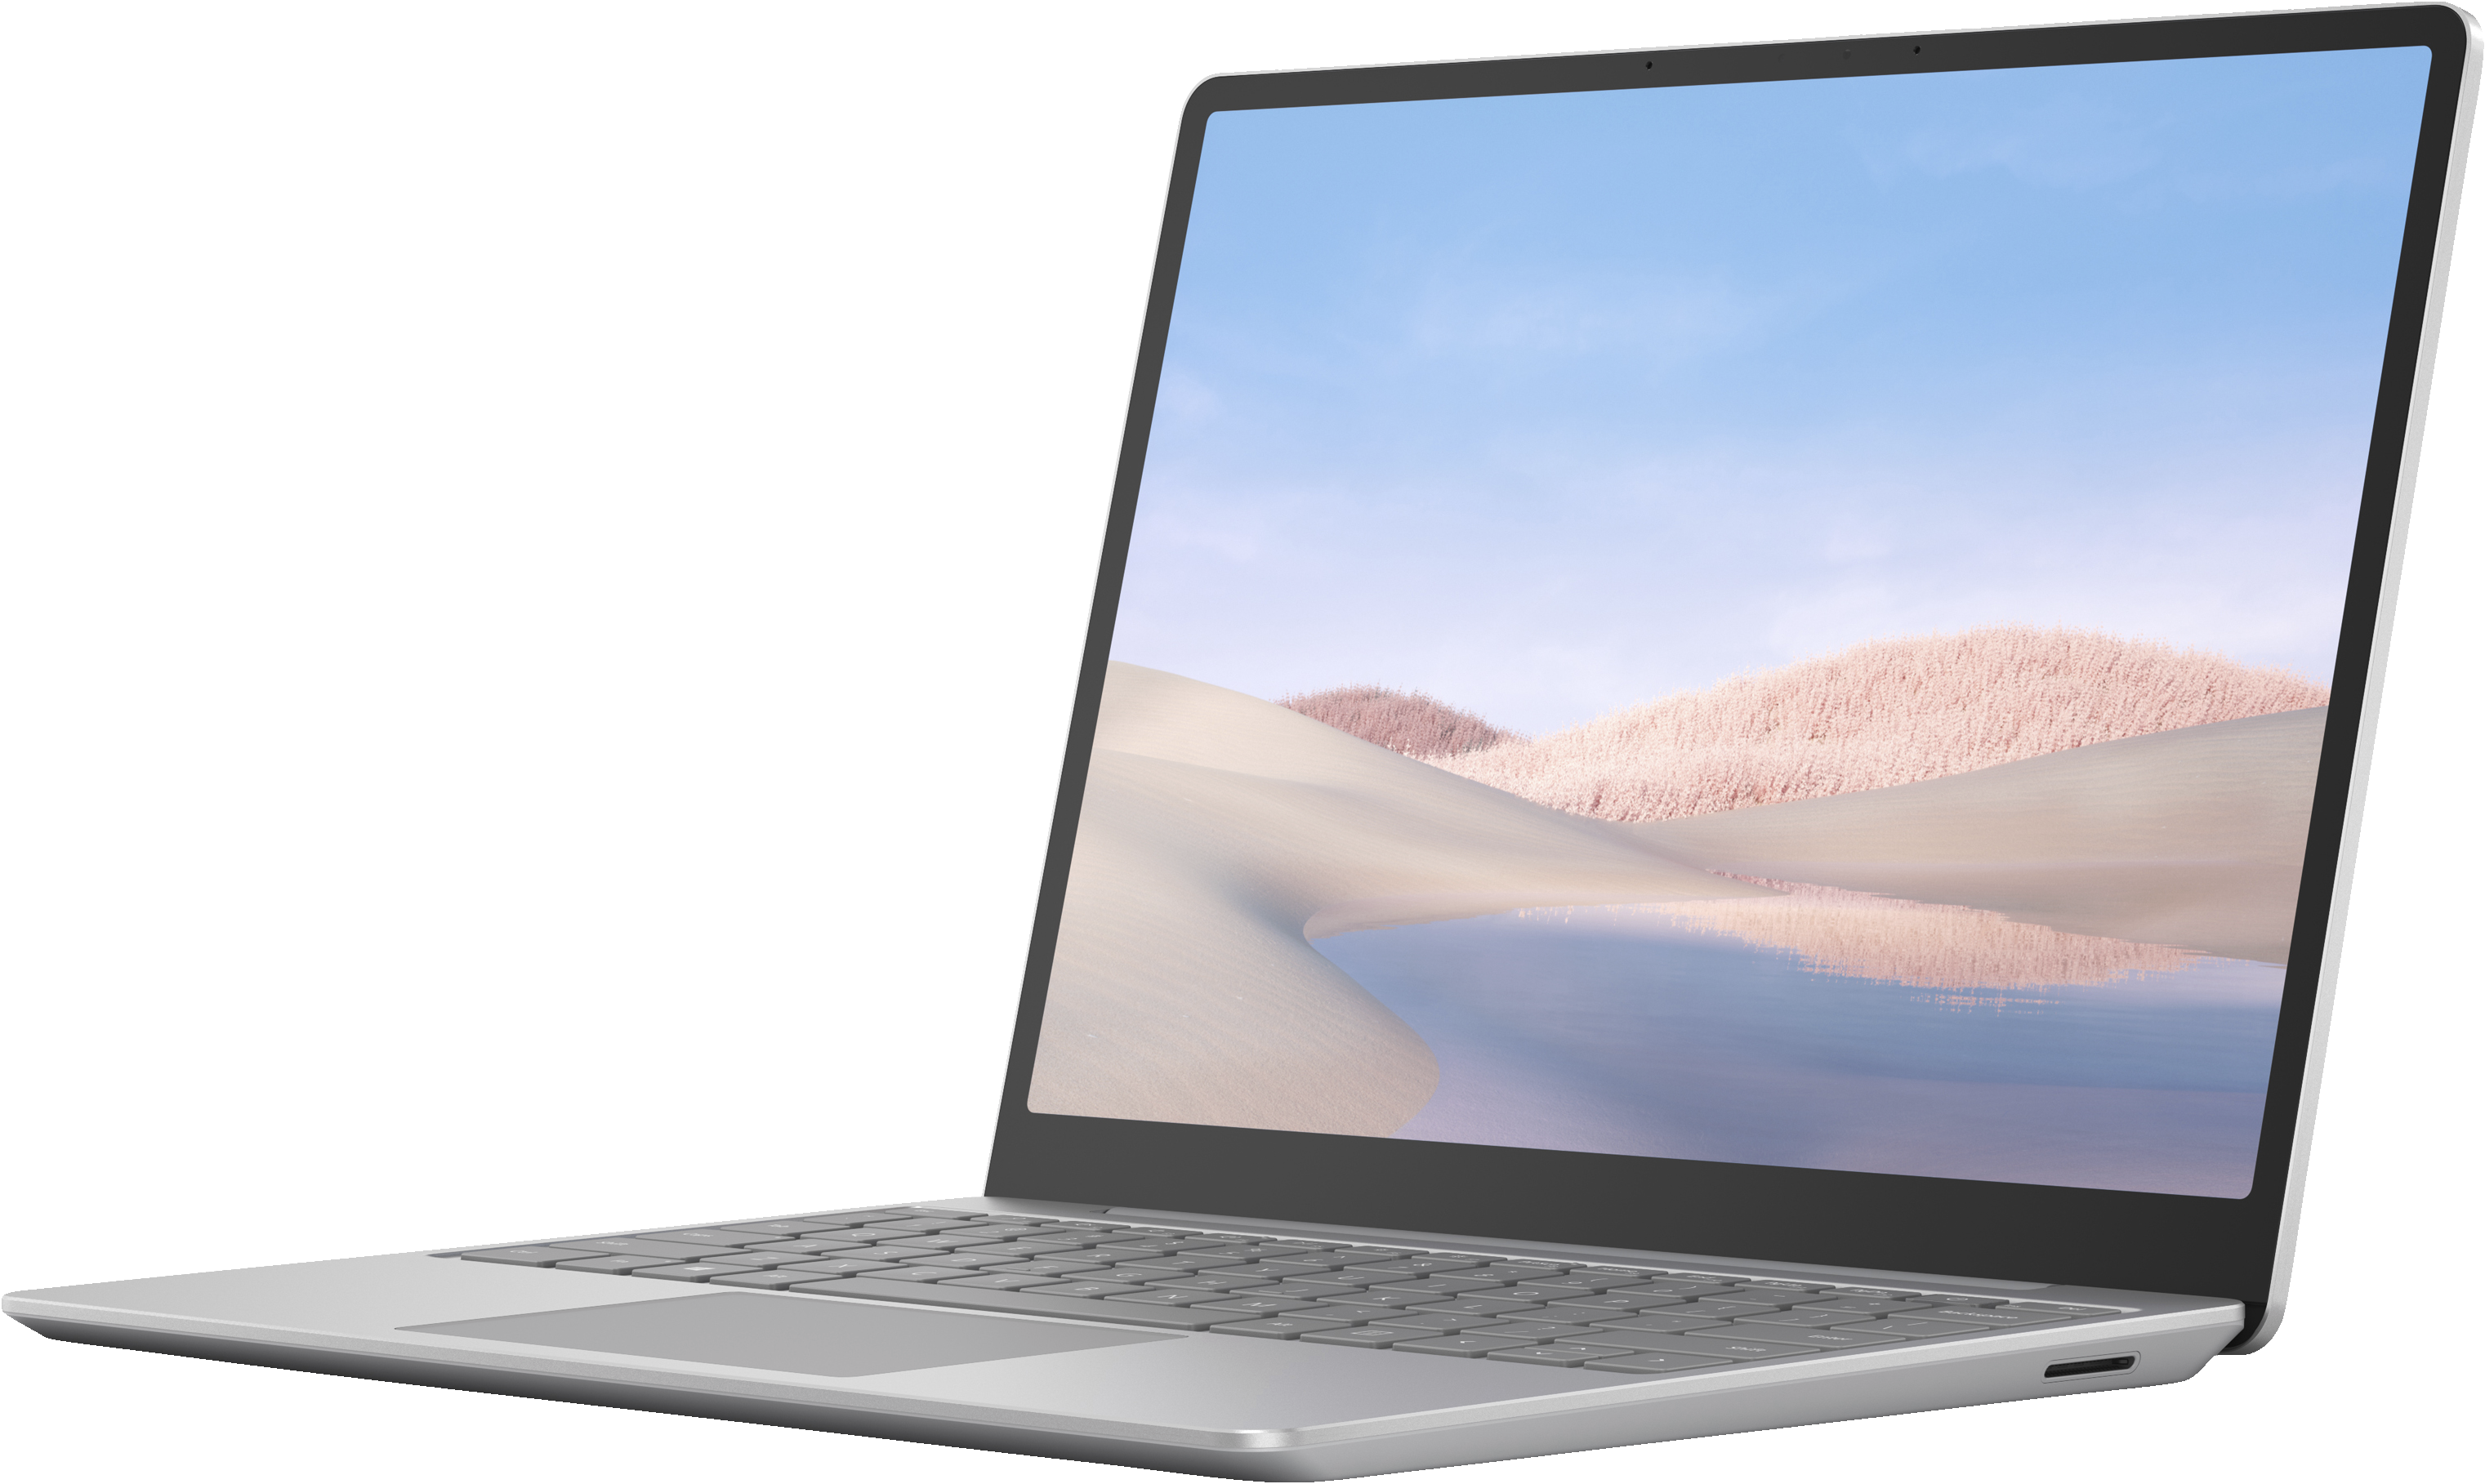 Microsoft Surface Laptop Og fikk 8/10 fra Itavisen etter deres test oktober 2021. De legger blant annet vekt på et innbydende design og godt tastatur.